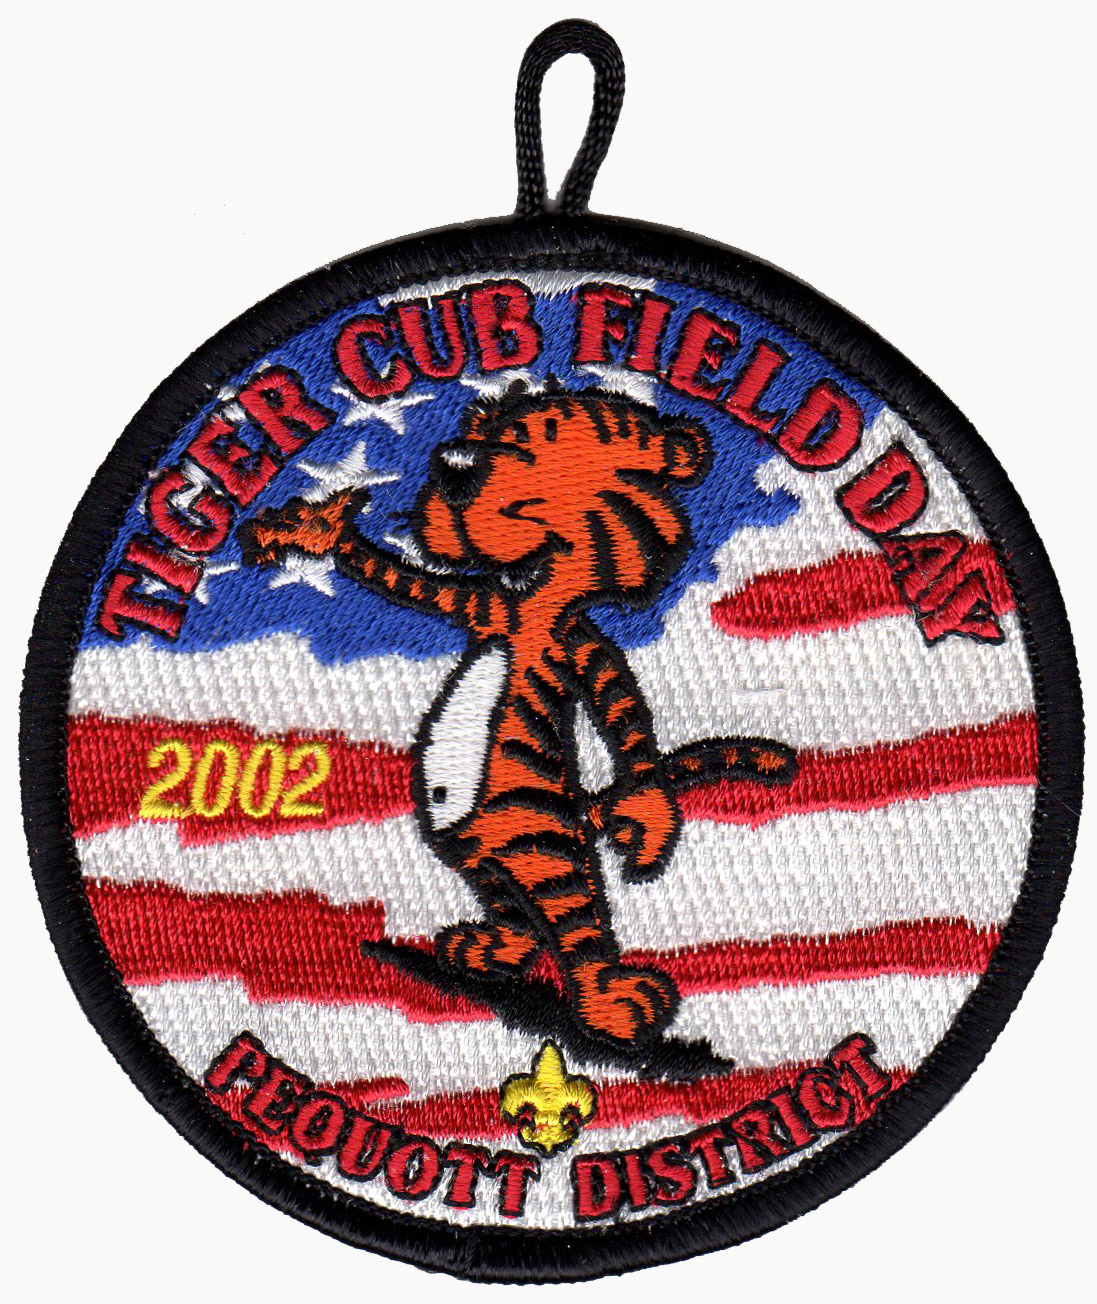 2002 Tiger Cub Field Day